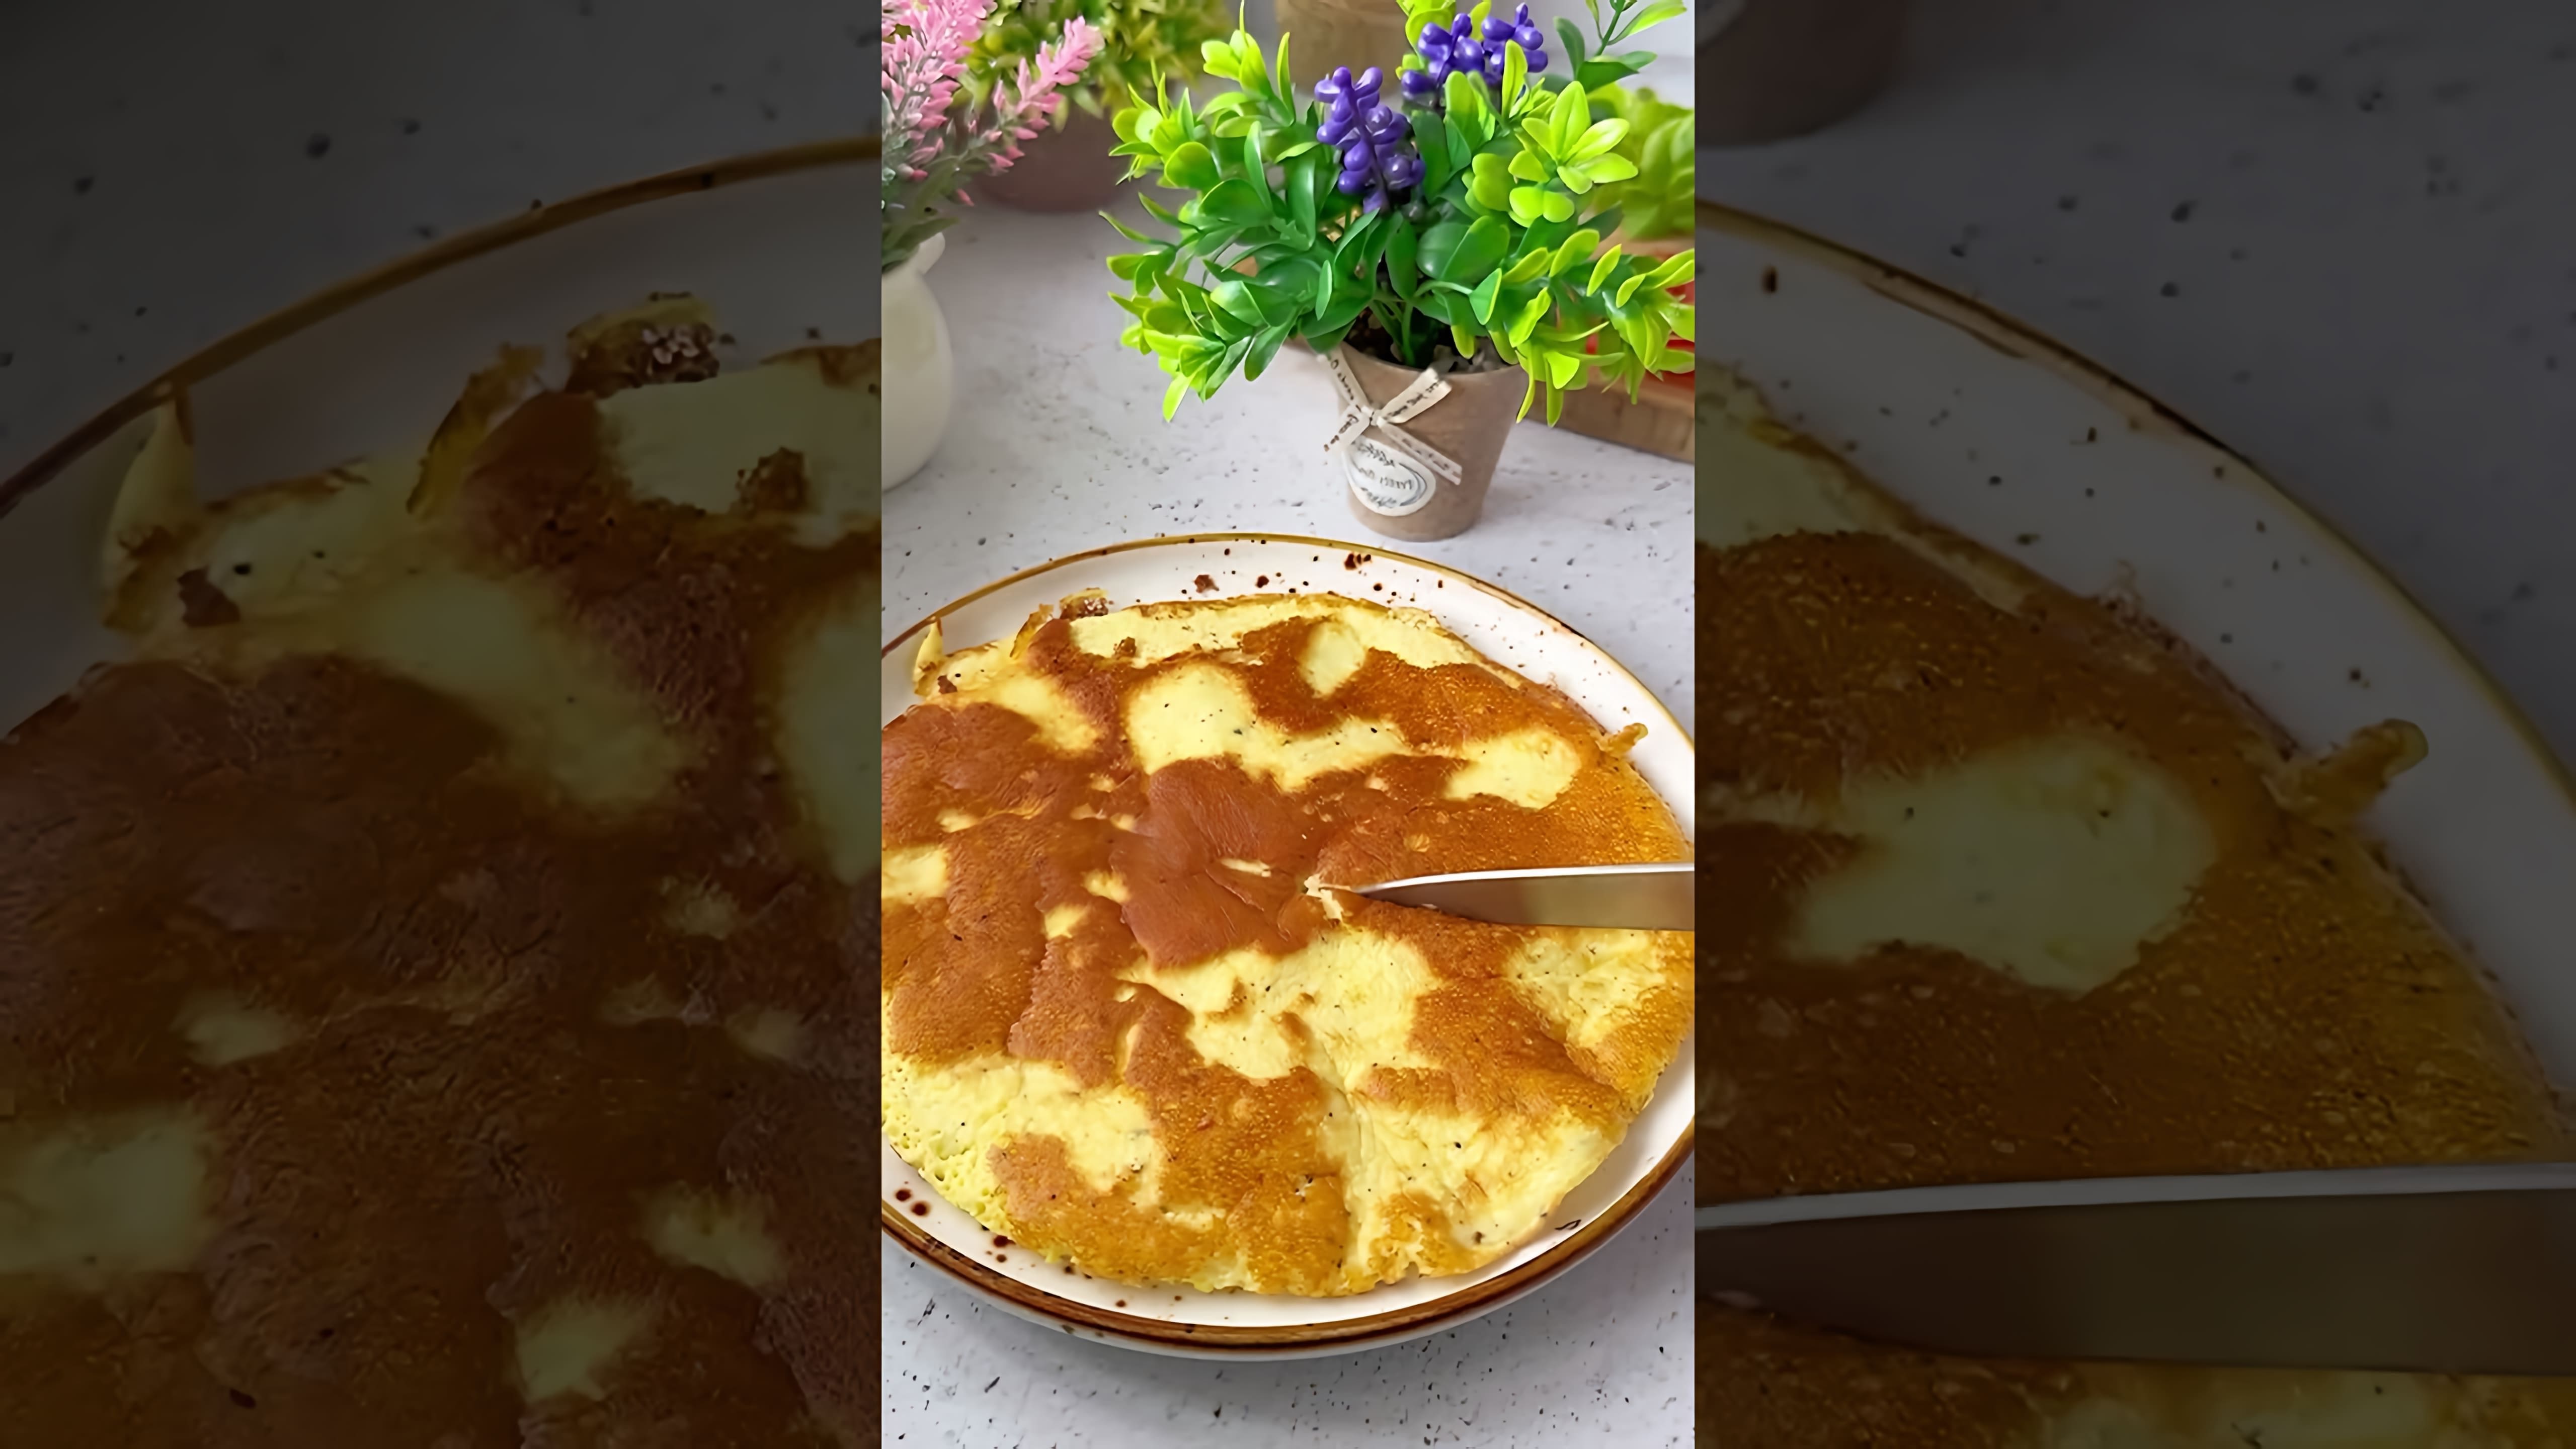 В этом видео демонстрируется процесс приготовления яичного блинчика с начинкой из творожного сыра, листьев салата, ветчины, помидора и сыра